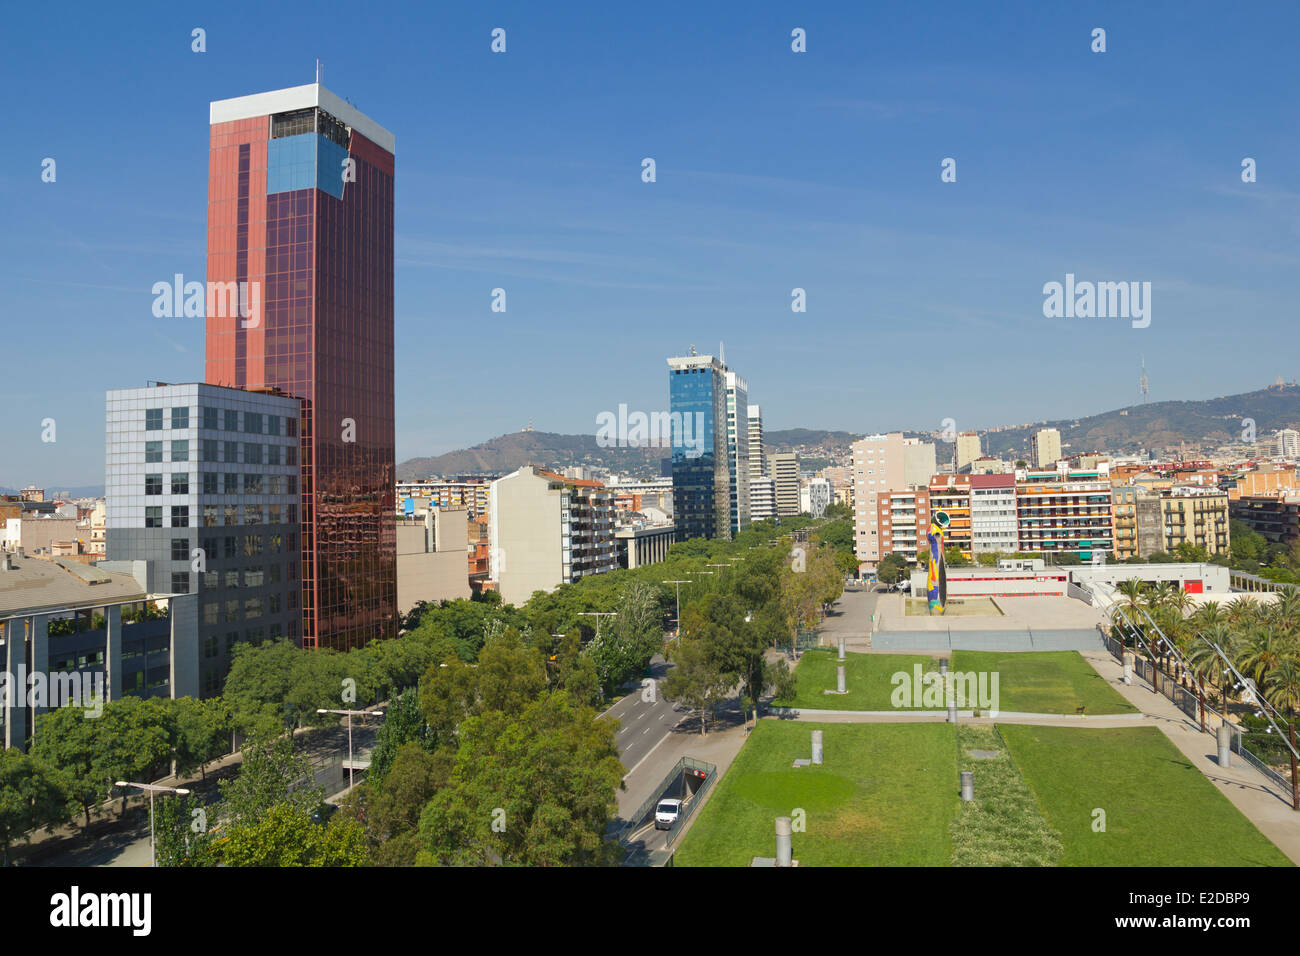 Miro square et vue panoramique de Barcelone, Espagne. Banque D'Images